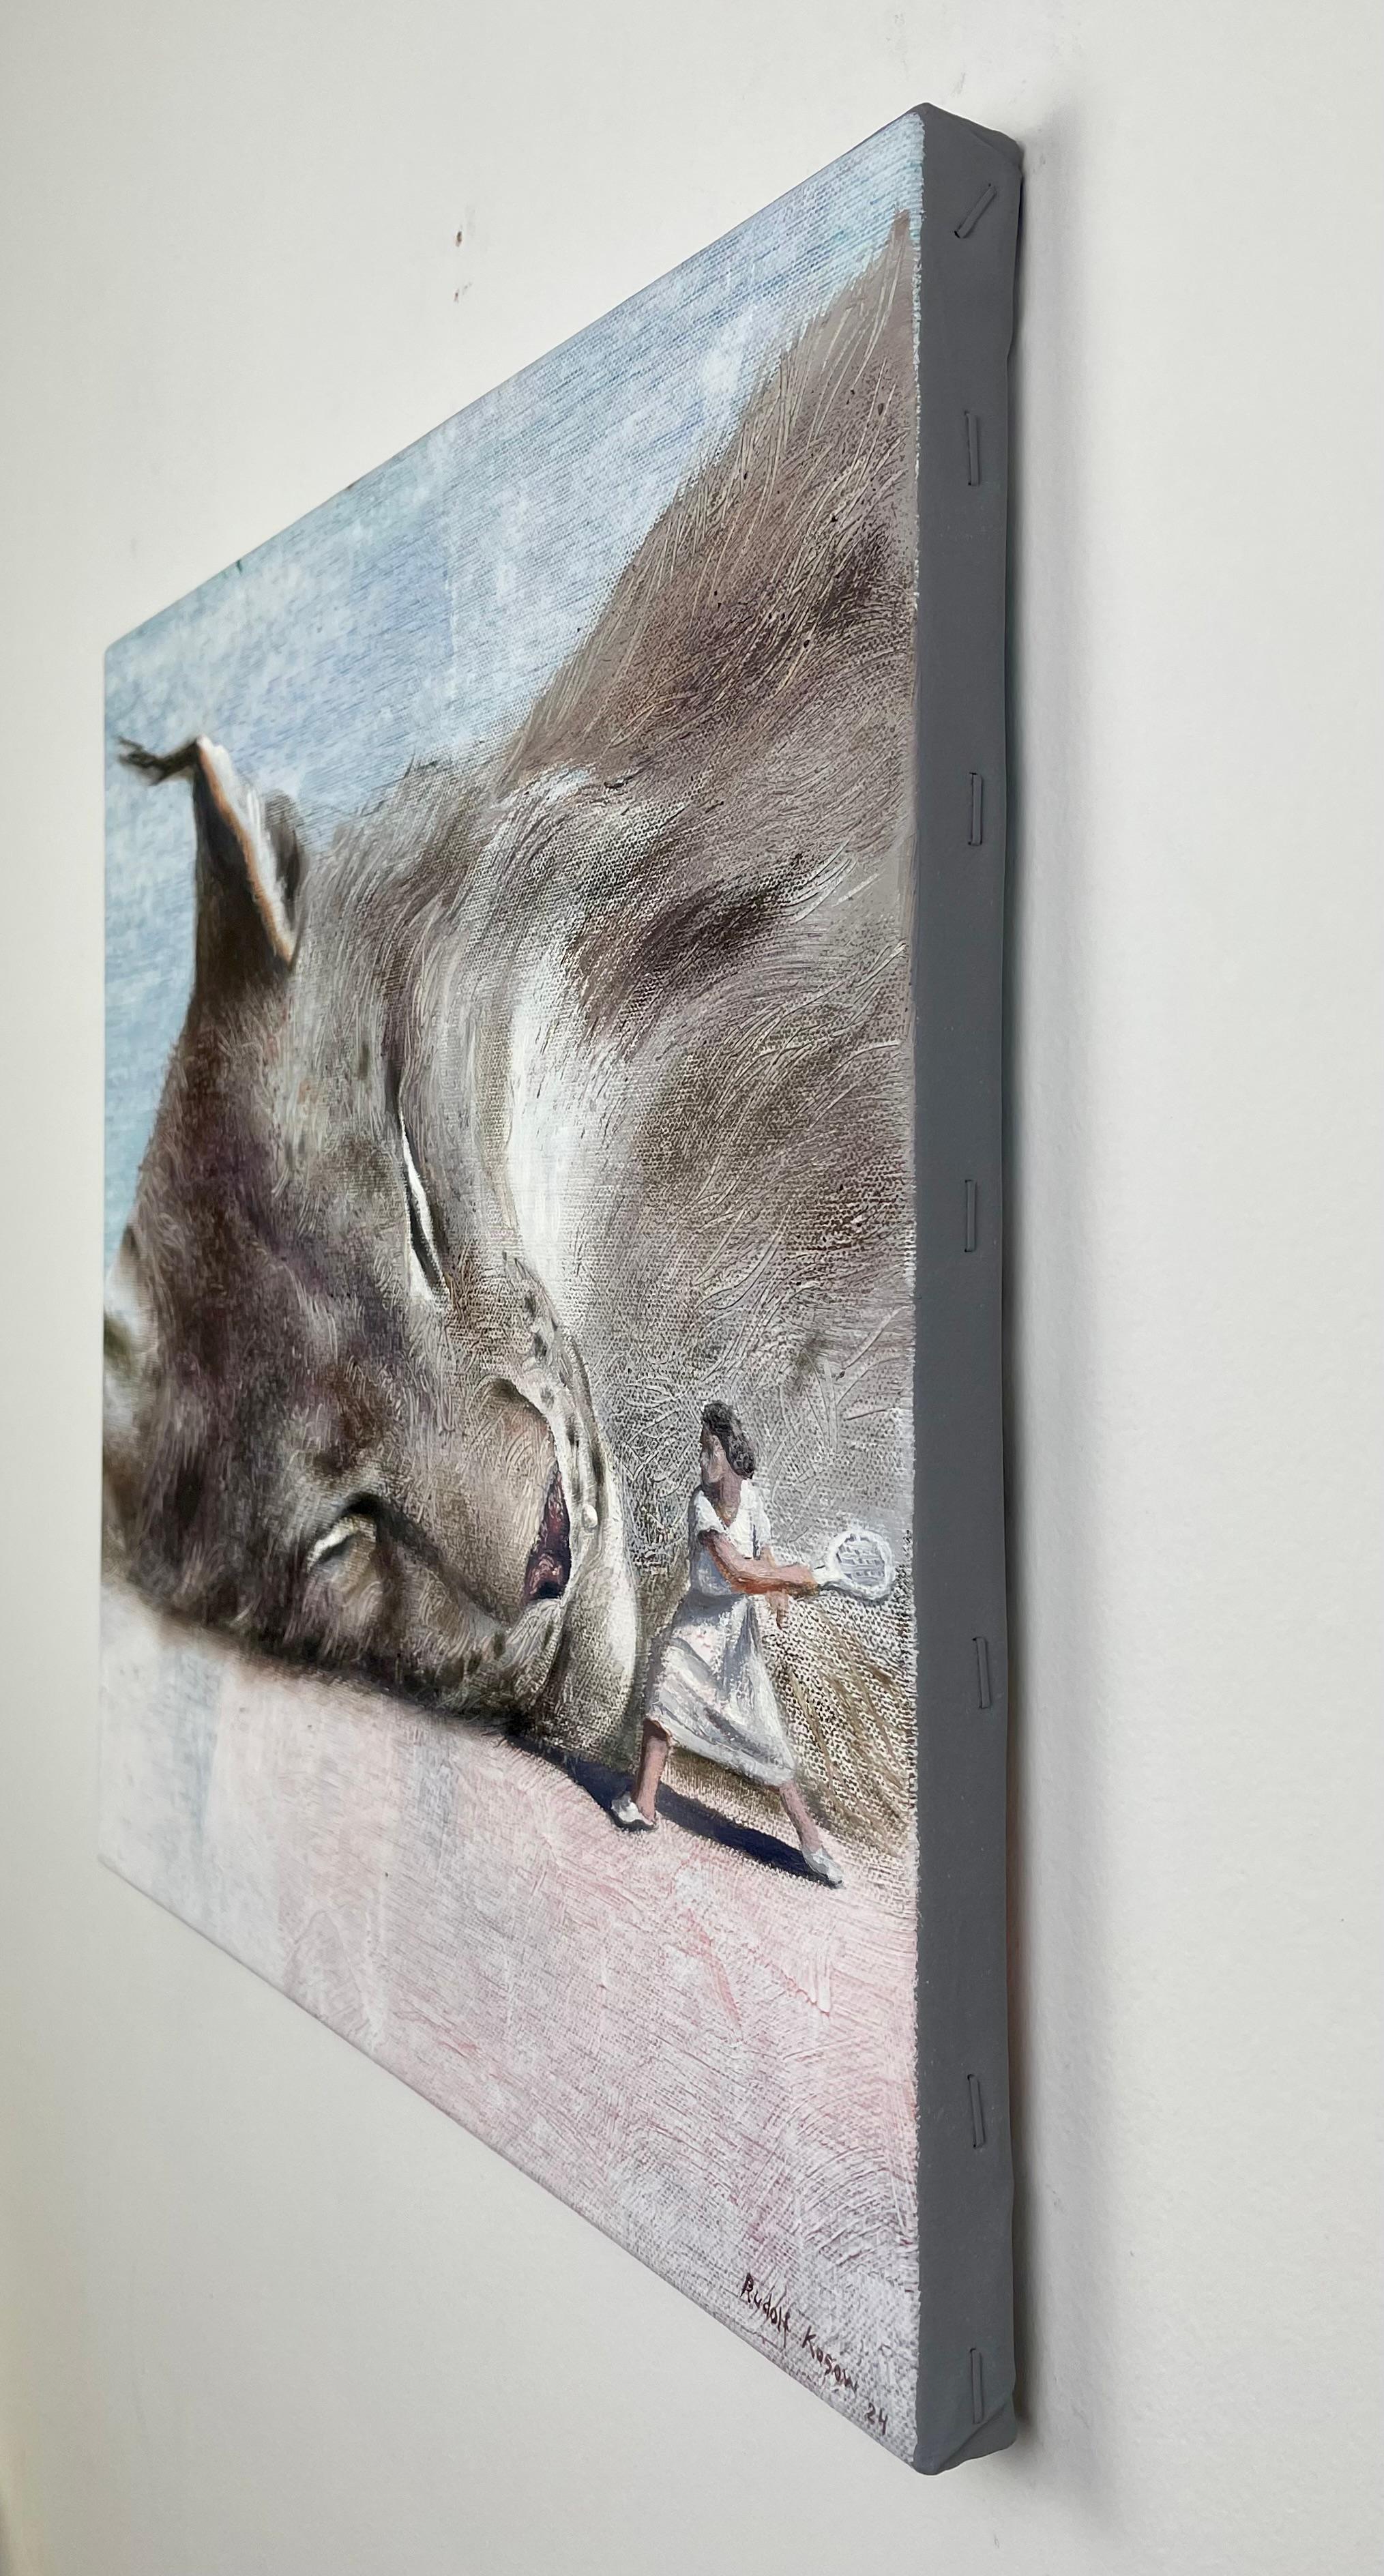 In diesem fesselnden Gemälde von Rudolf Kosow wird die Leinwand durch eine surreale und dynamische Begegnung lebendig. Auf den ersten Blick sieht man einen massiven Katzenkopf, der mit einer Ruhe dargestellt ist, die seine ungezähmte Natur verrät.